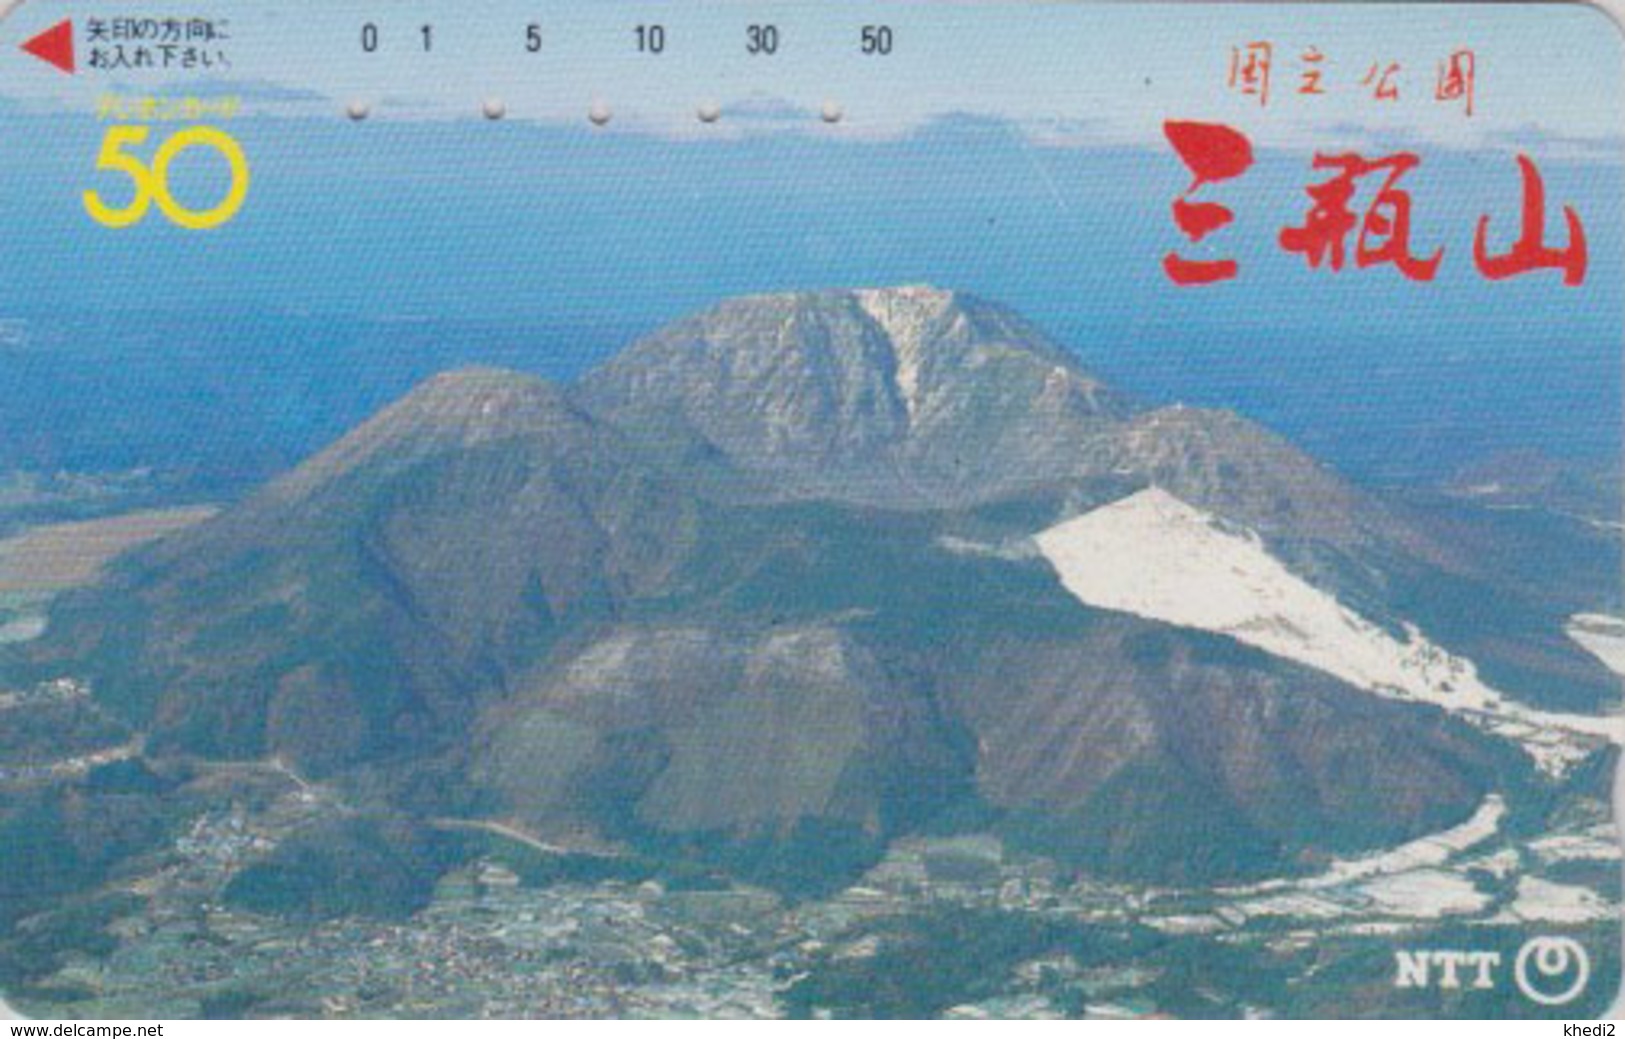 Télécarte JAPON / NTT 350-054 - Cratère De VOLCAN TBE - VULCAN - JAPAN Phonecard - VOLCANO - Vulkane